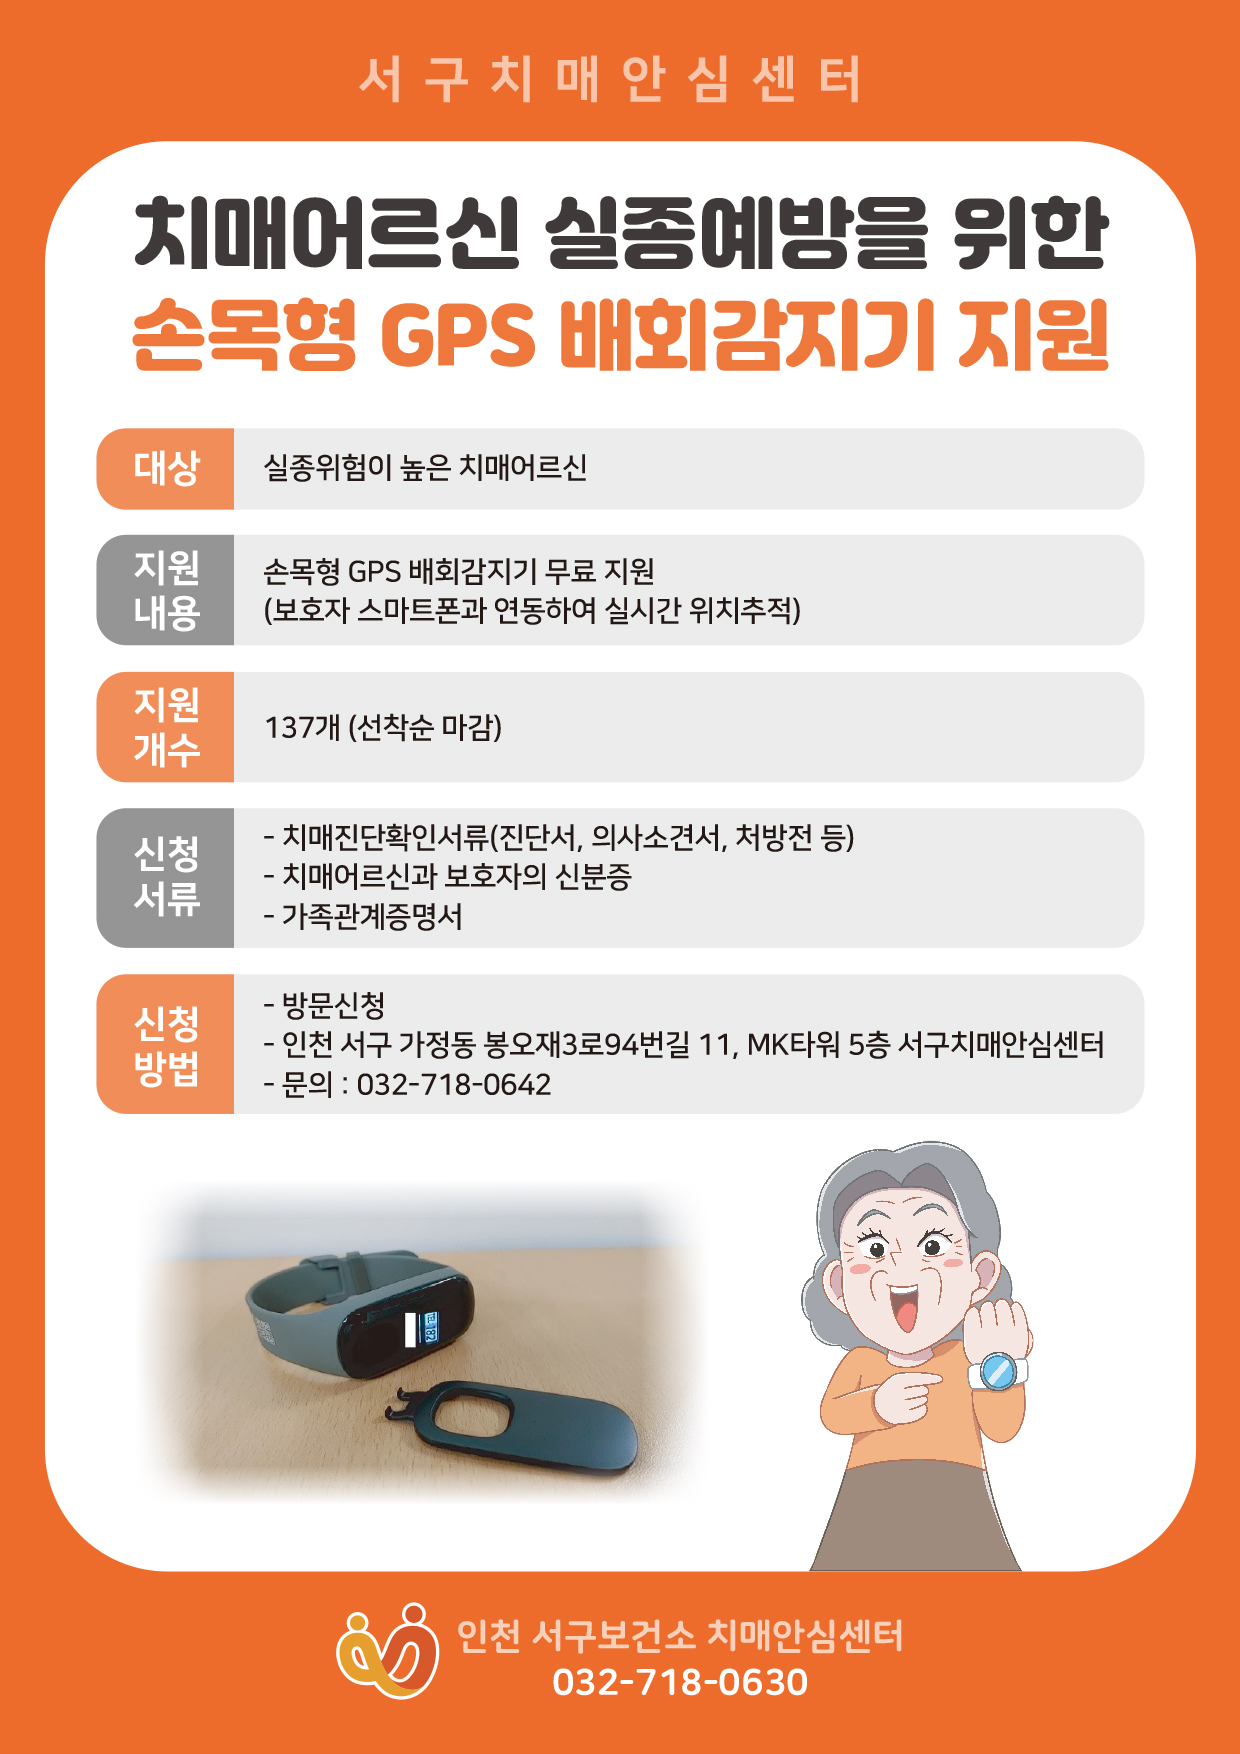 GPS 배회감지기 무료지원 서비스 안내.jpg